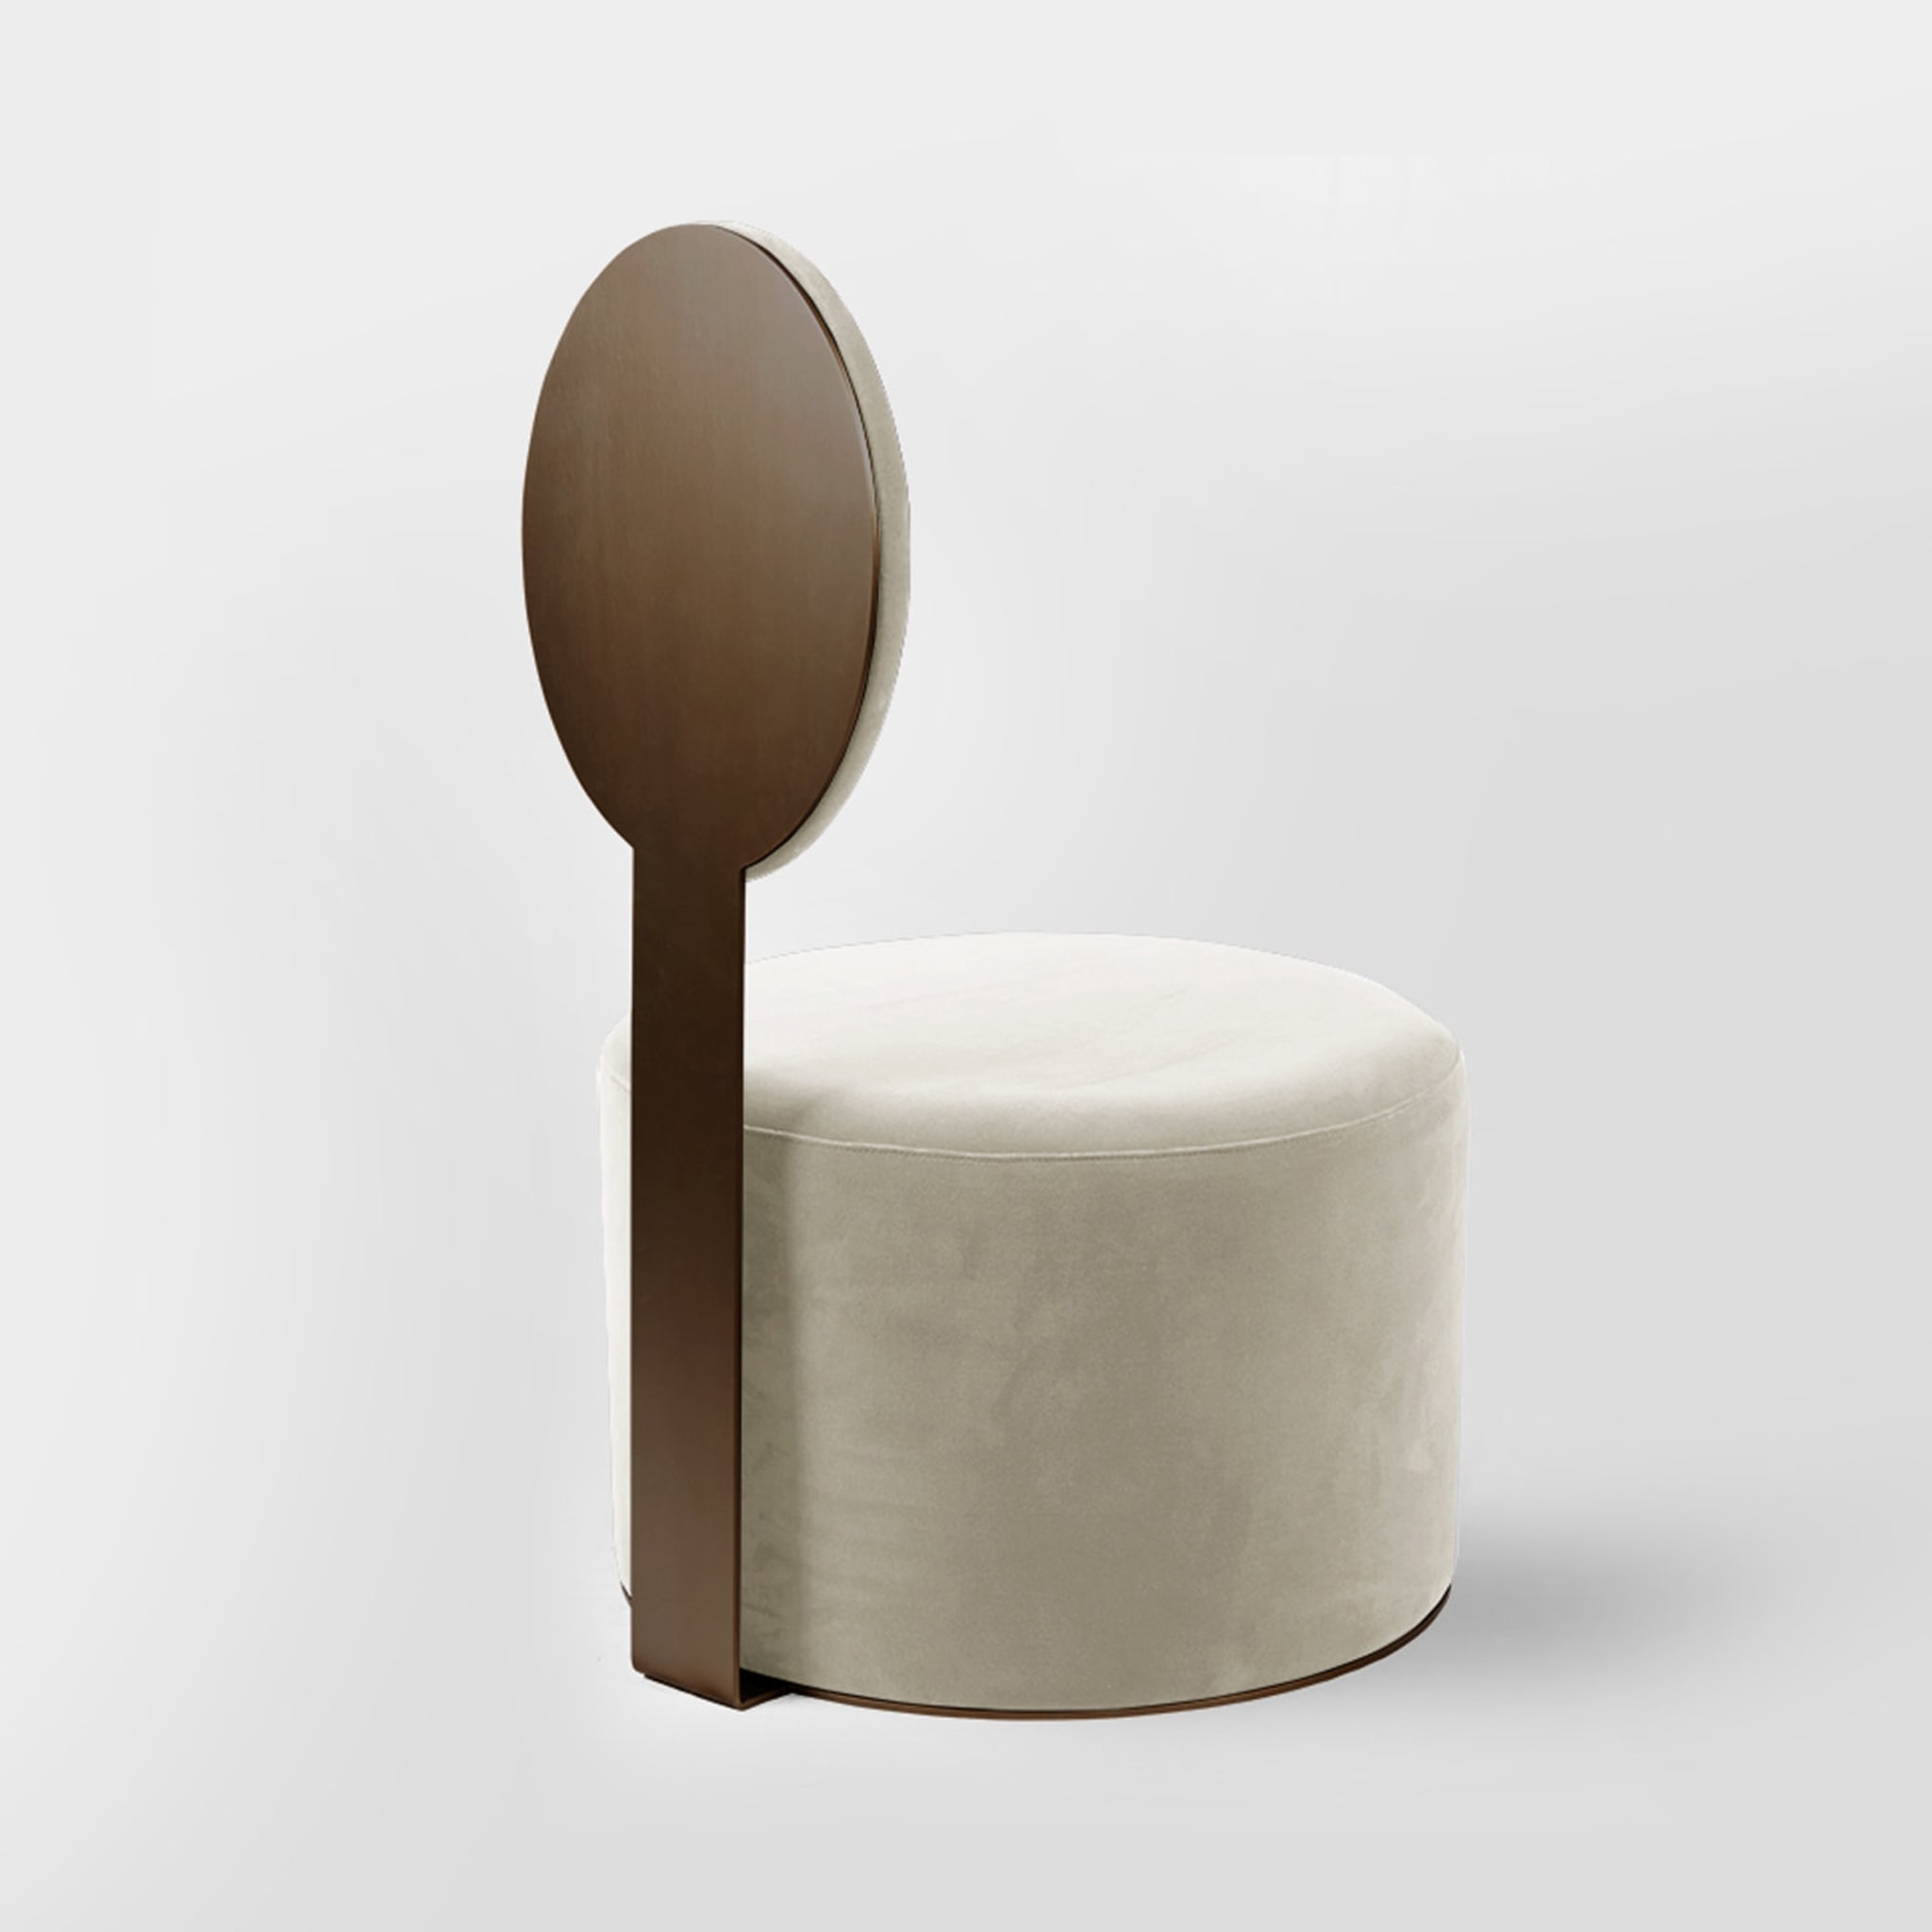 Pop White Chair by Artefatto Design Studio - Alternative view 2